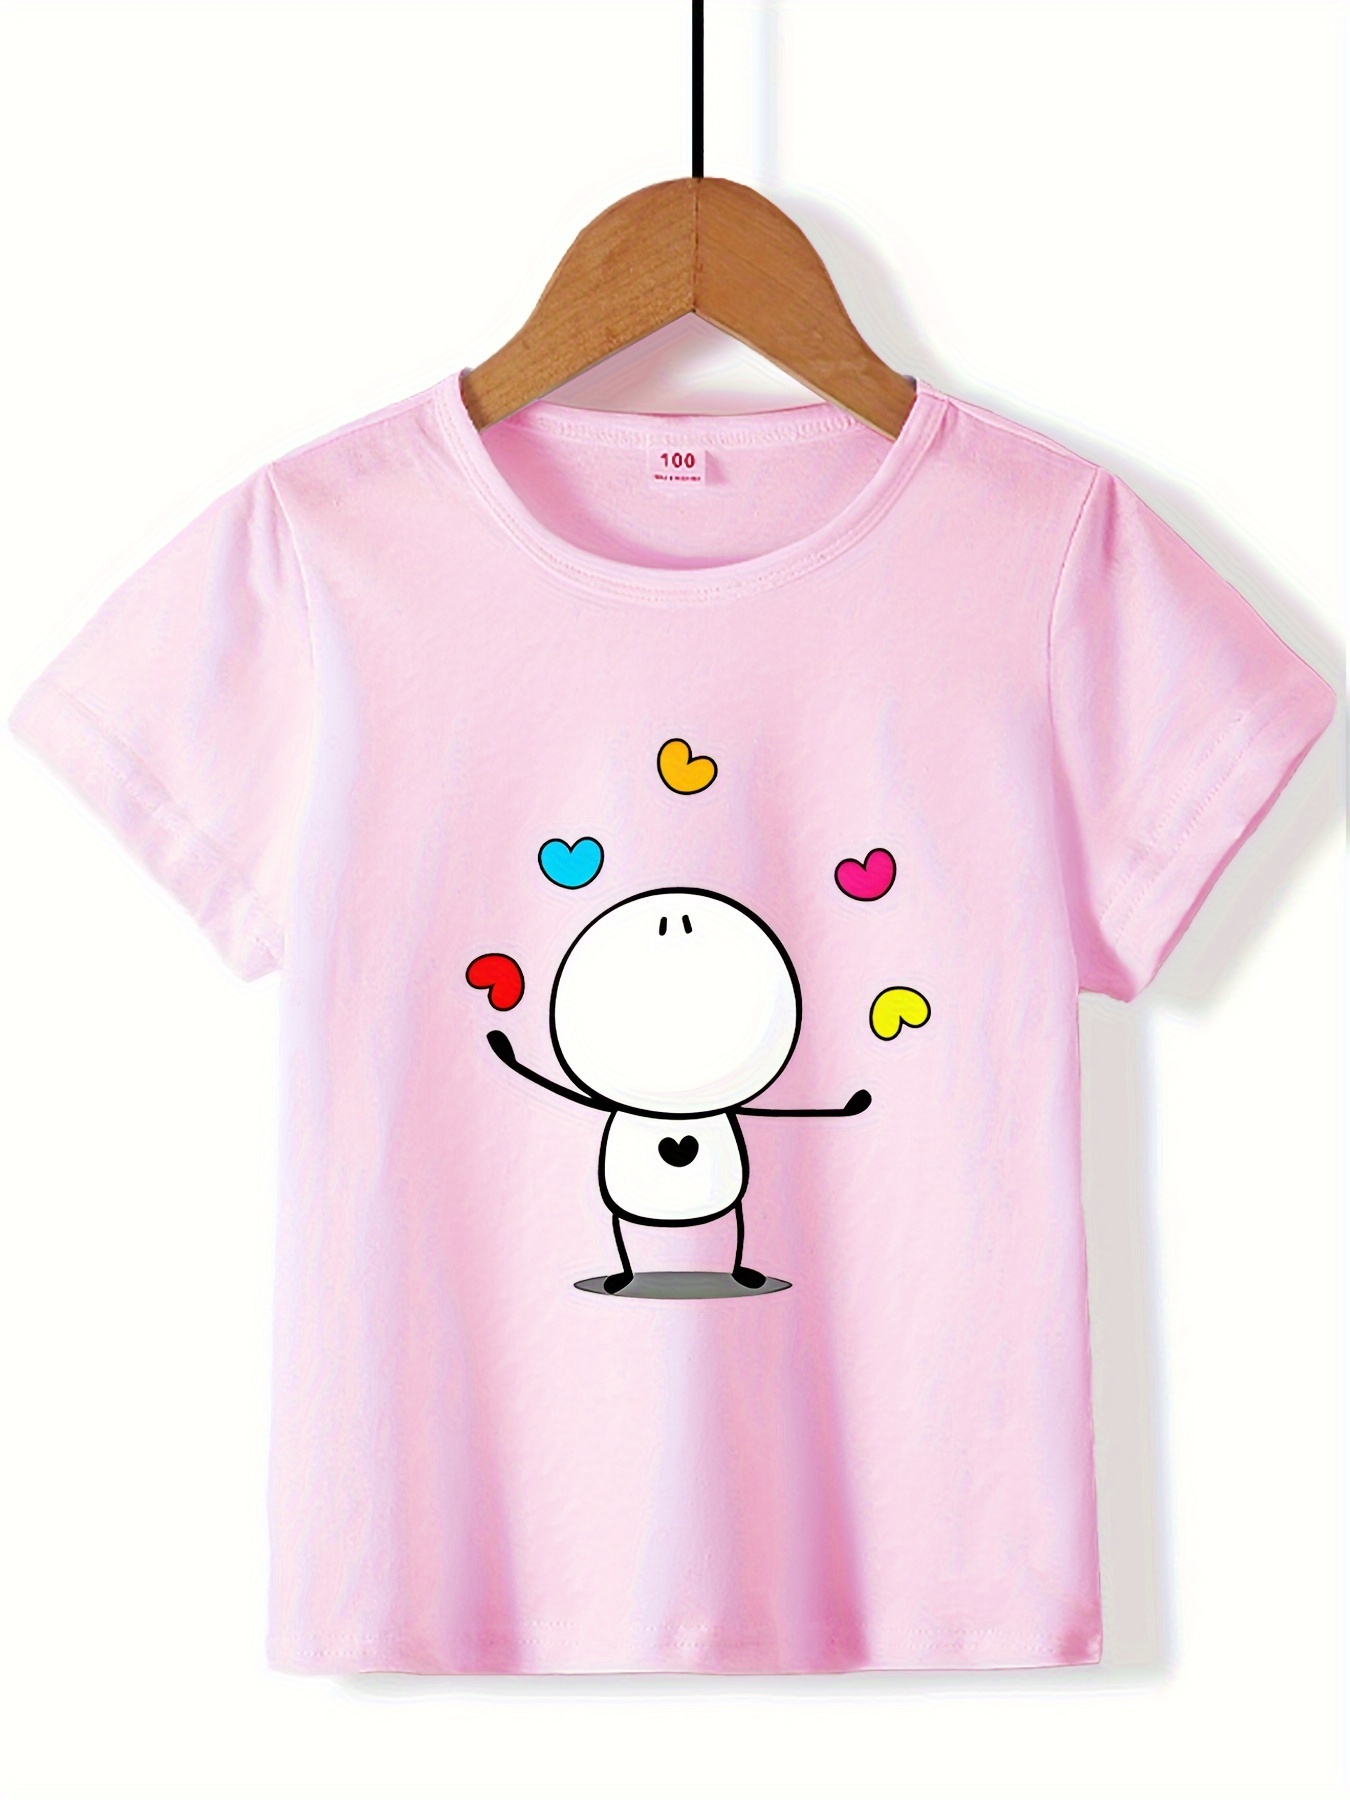 T-Shirt AMÔ Rosa: As t-shirts em 100% algodão mais estilosas estão